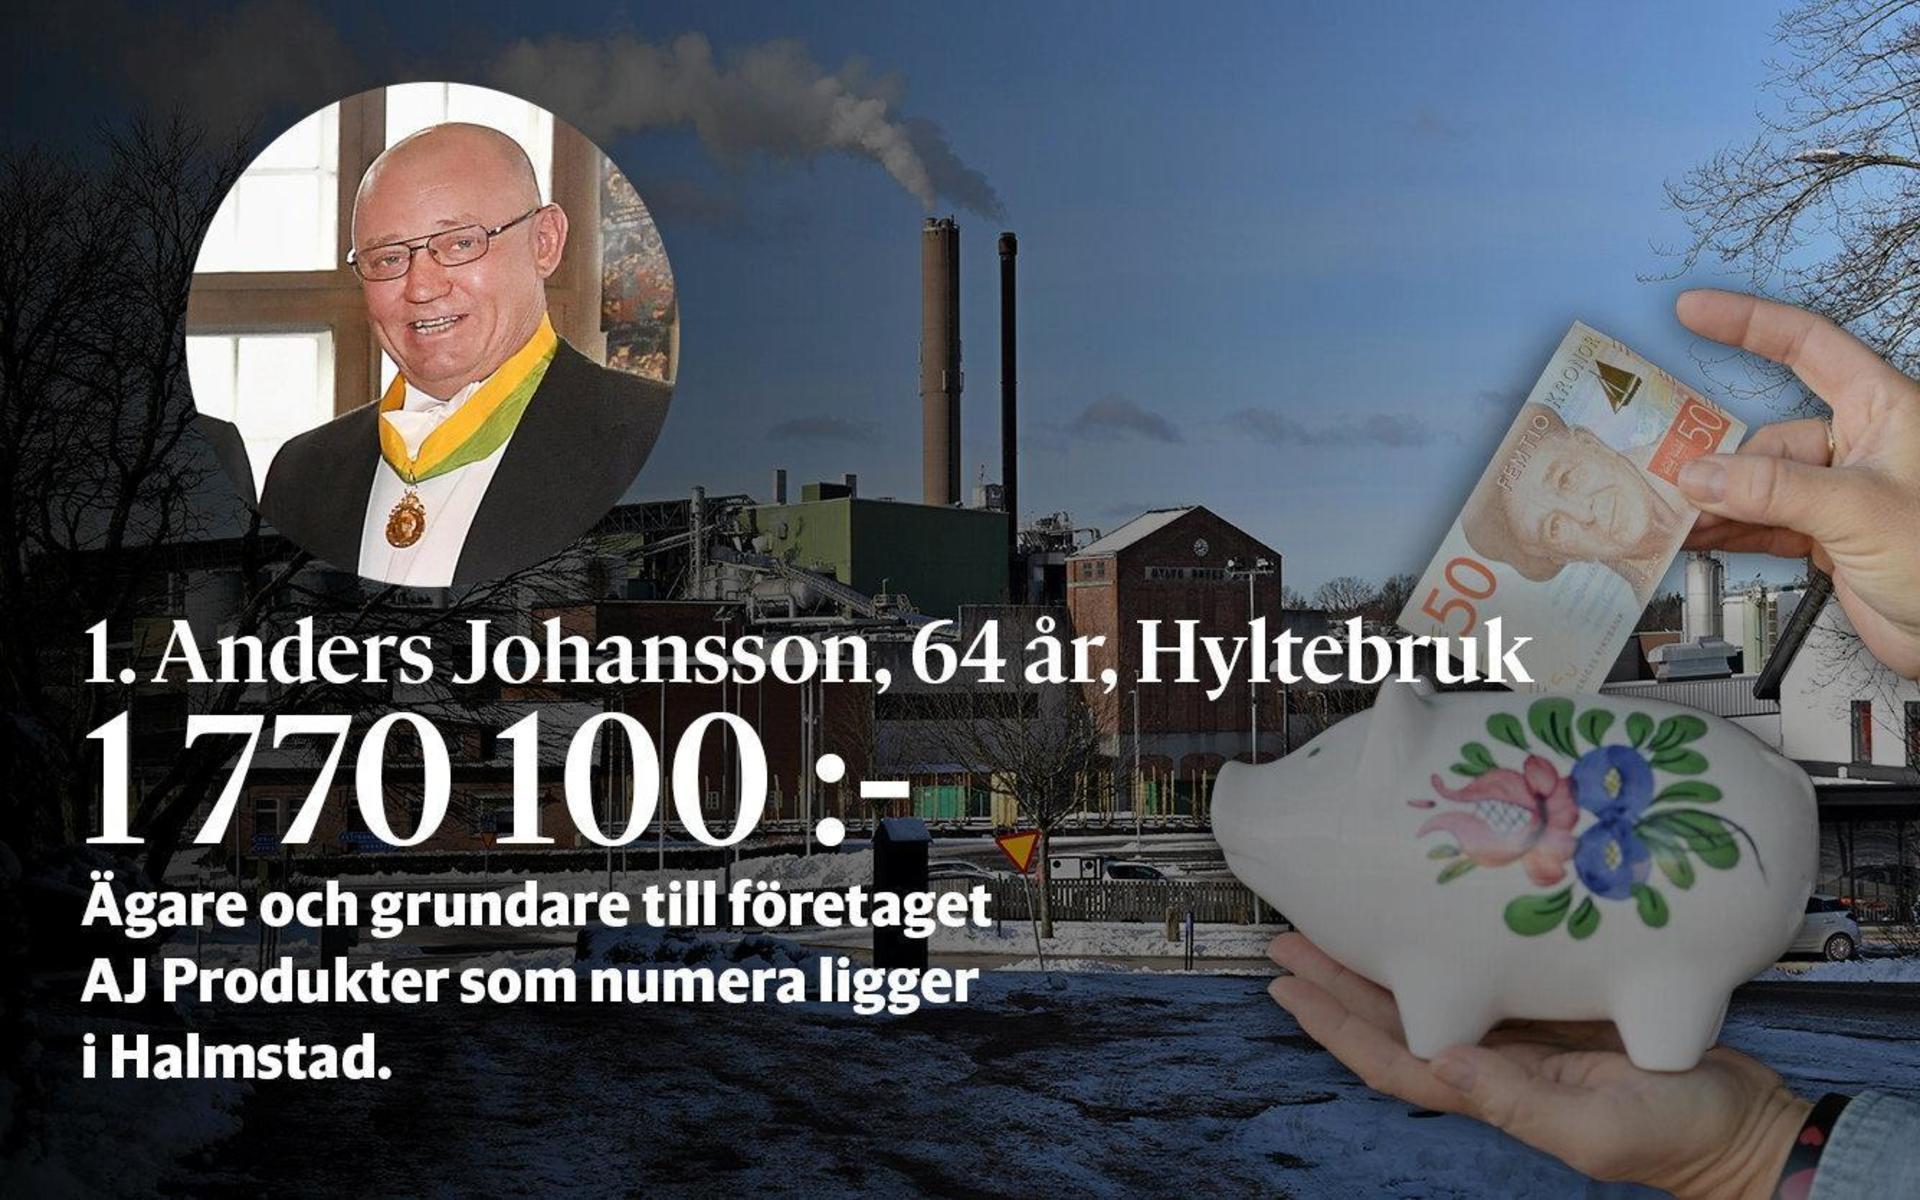 1. Anders Johansson har den högsta förvärvsinkomsten i Hylte. Han är ägare till AJ Produkter, som han grundade 1972. Sitter i en mängd bolagsstyrelser. AJ Produkter flyttade från Hyltebruk till Halmstad 2012.